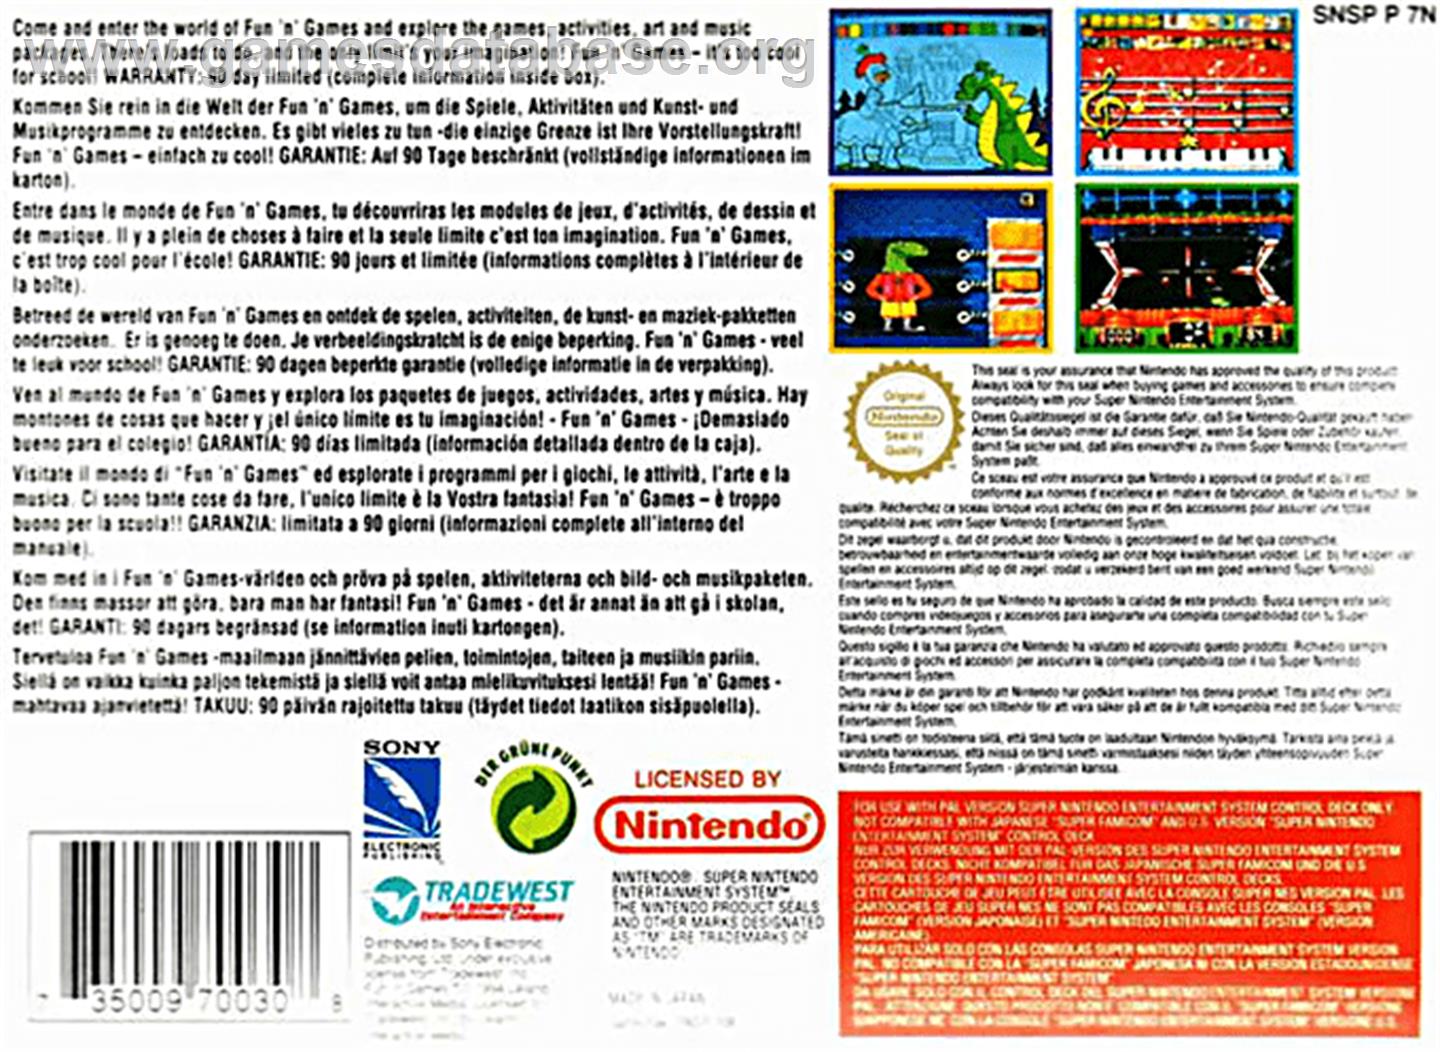 Fun 'N Games - Nintendo SNES - Artwork - Box Back